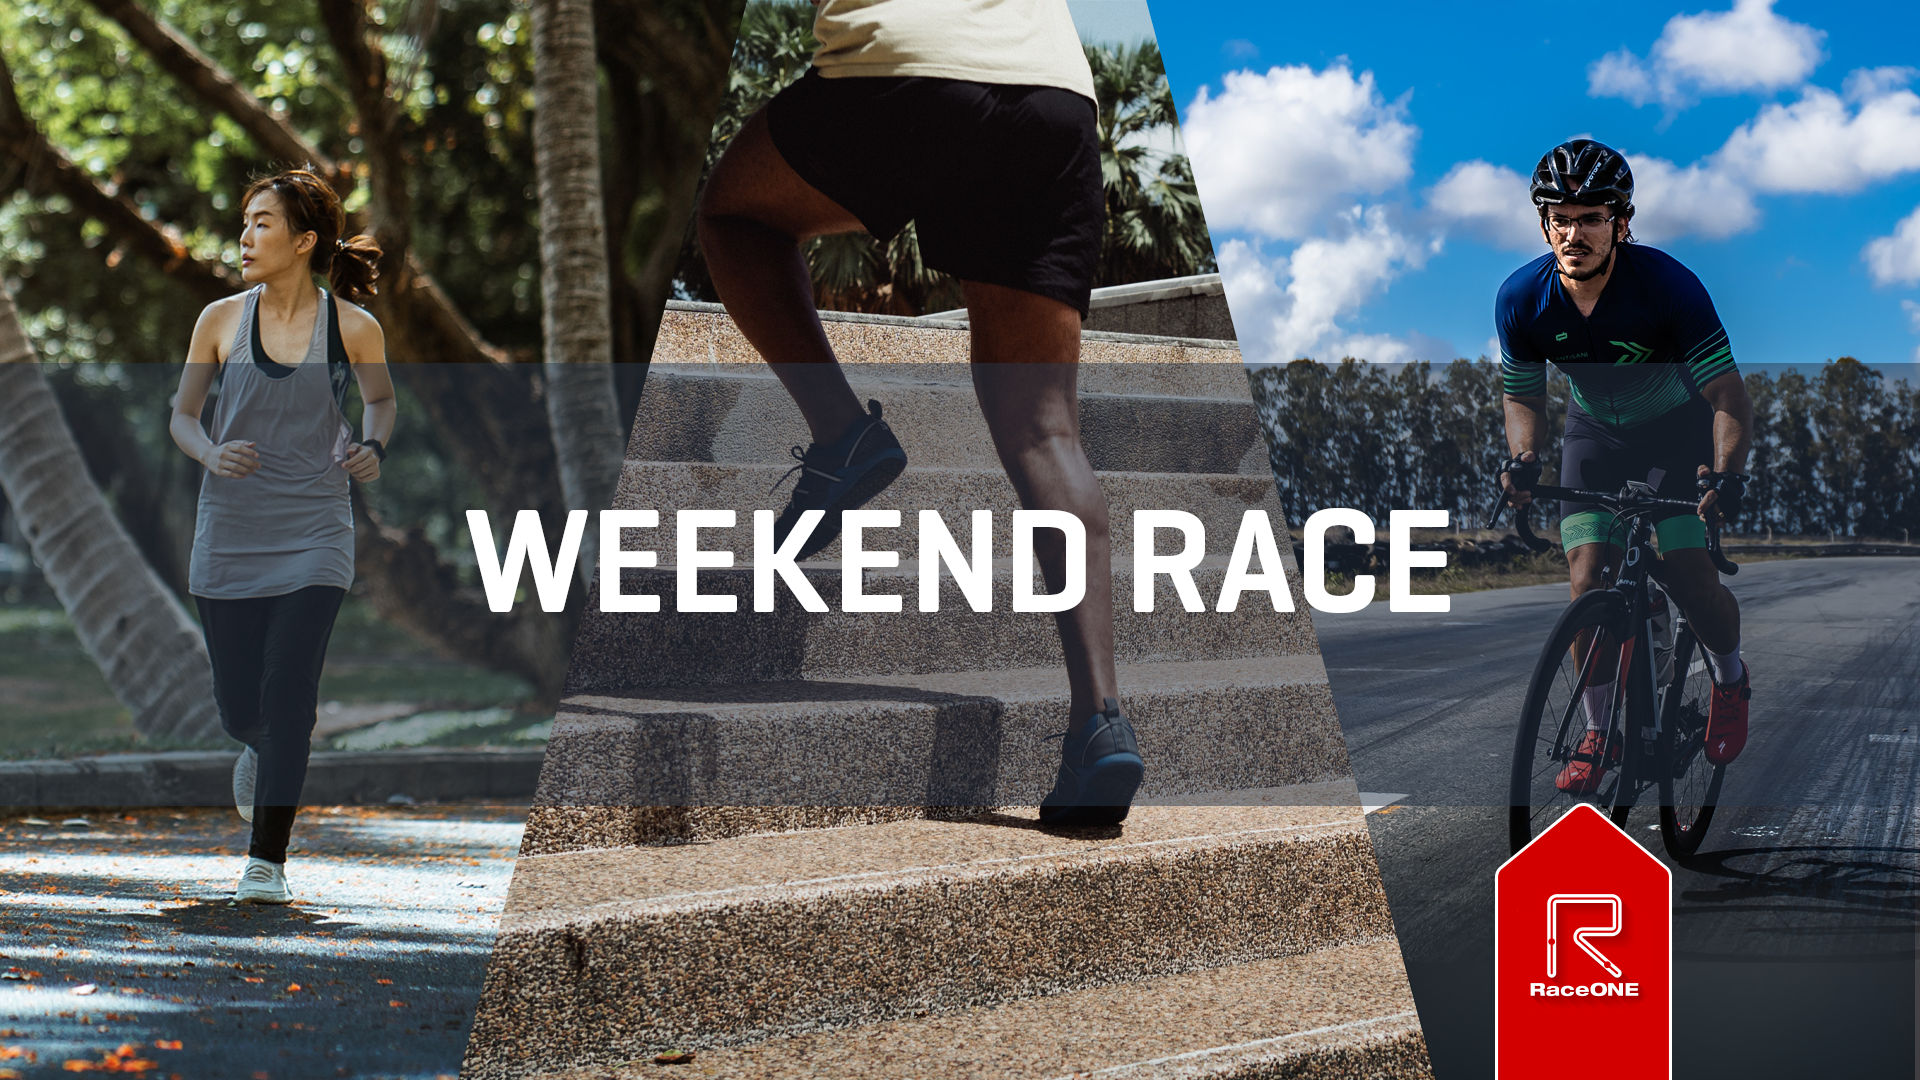 Weekend Race - Week 23 - 60 min